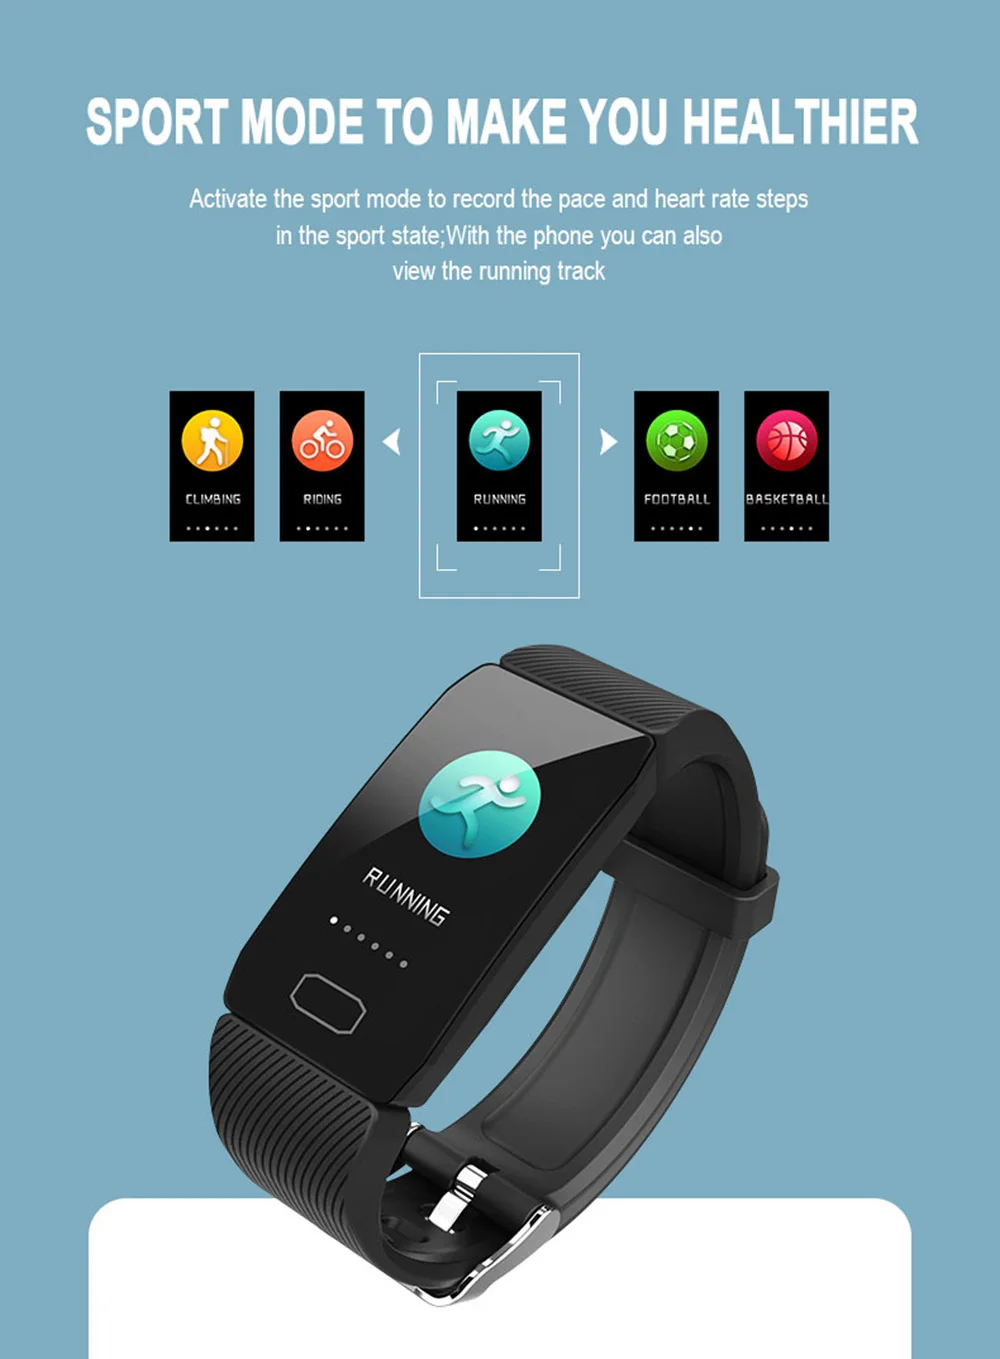 Цветной экран фитнес-Браслет спортивный монитор сердечного ритма Smartband водонепроницаемый смарт-Браслет фитнес-трекер Bluetooth Смарт-часы для мужчин